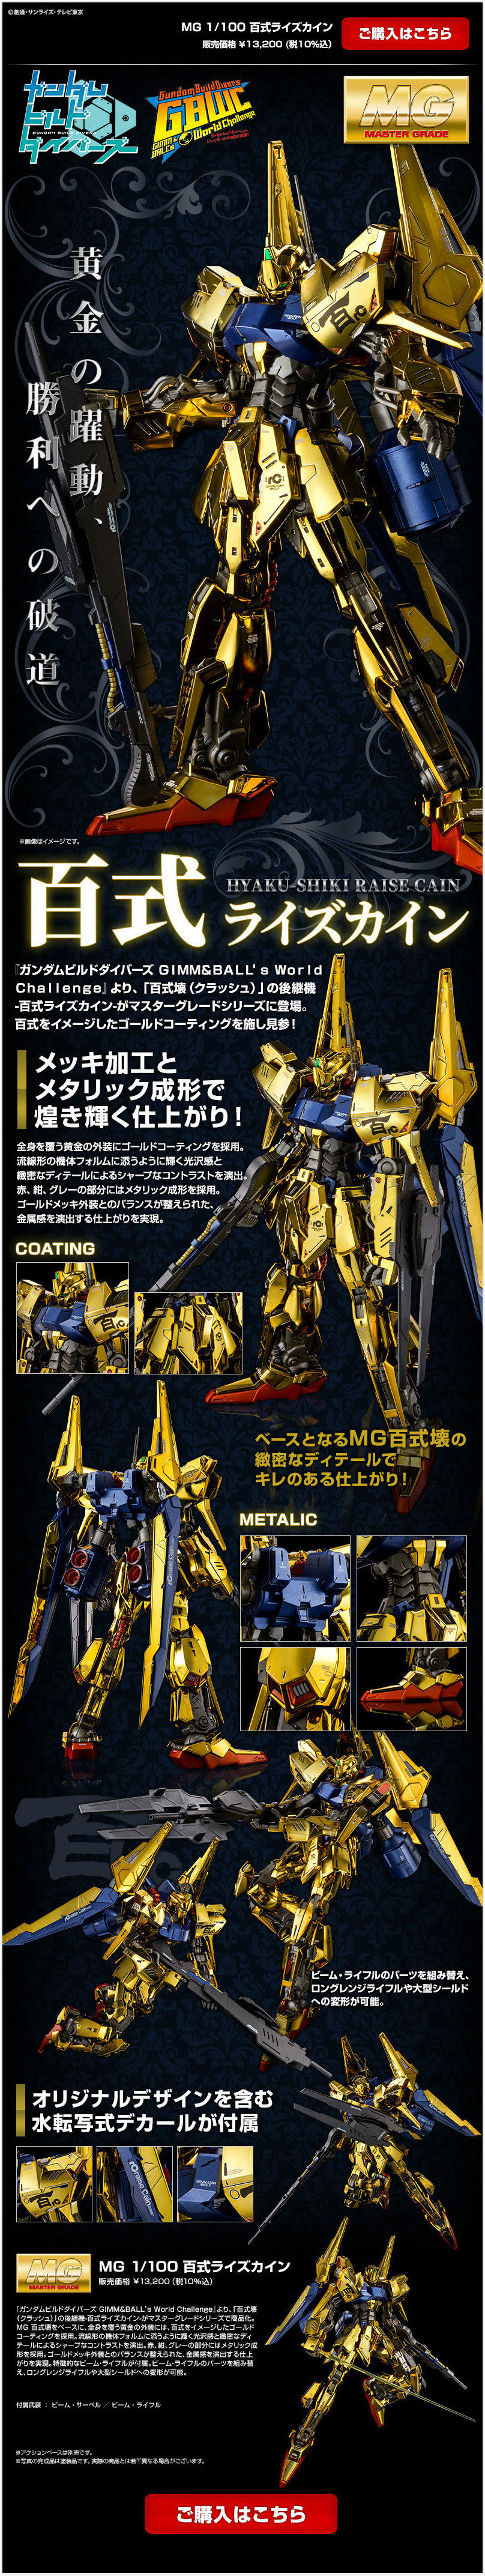 万代PB限定MG 1/100百式Raise Cain高达 售价13200日元